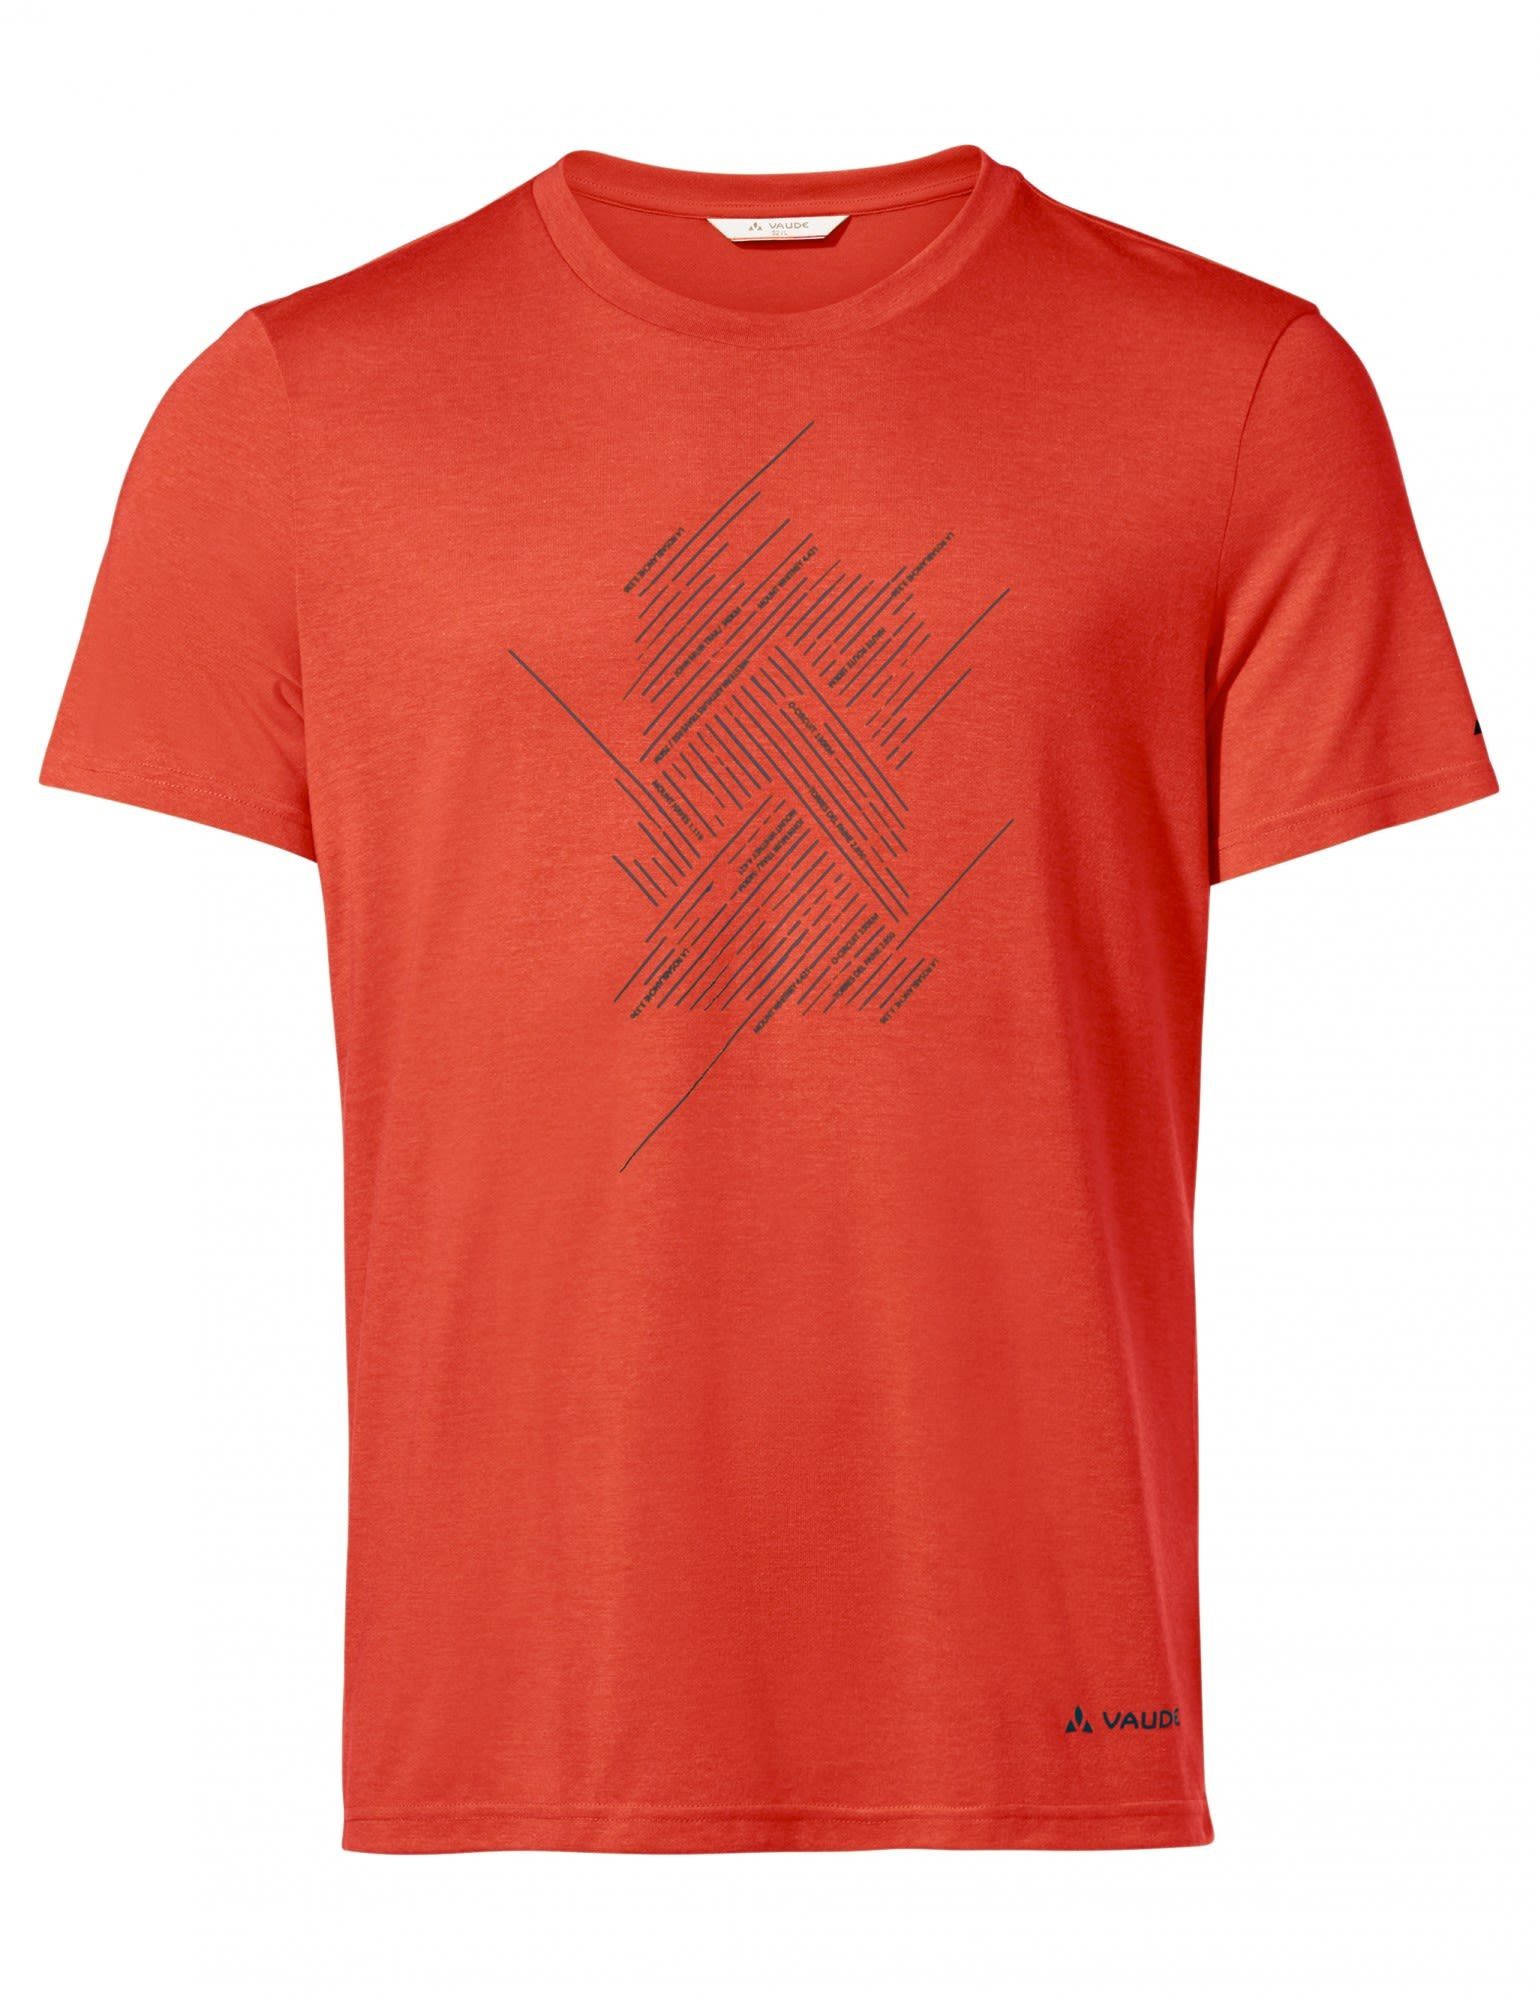 Kurzarm-Shirt Glowing Vaude T-Shirt Tekoa T-shirt Herren VAUDE Red Iii Mens